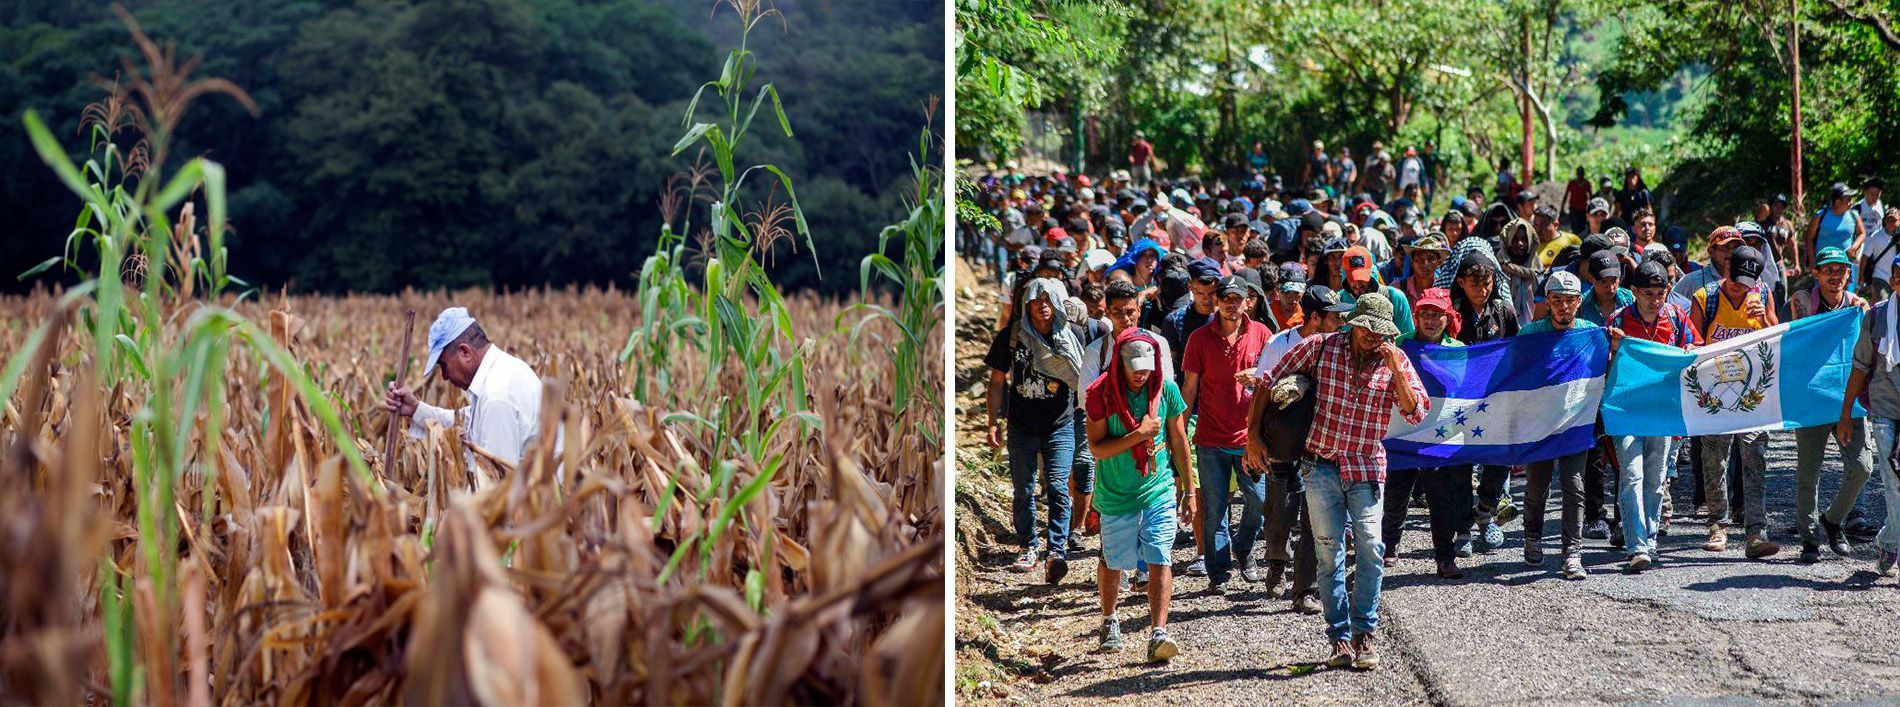 Sequías y migraciones humanas en Centroamérica